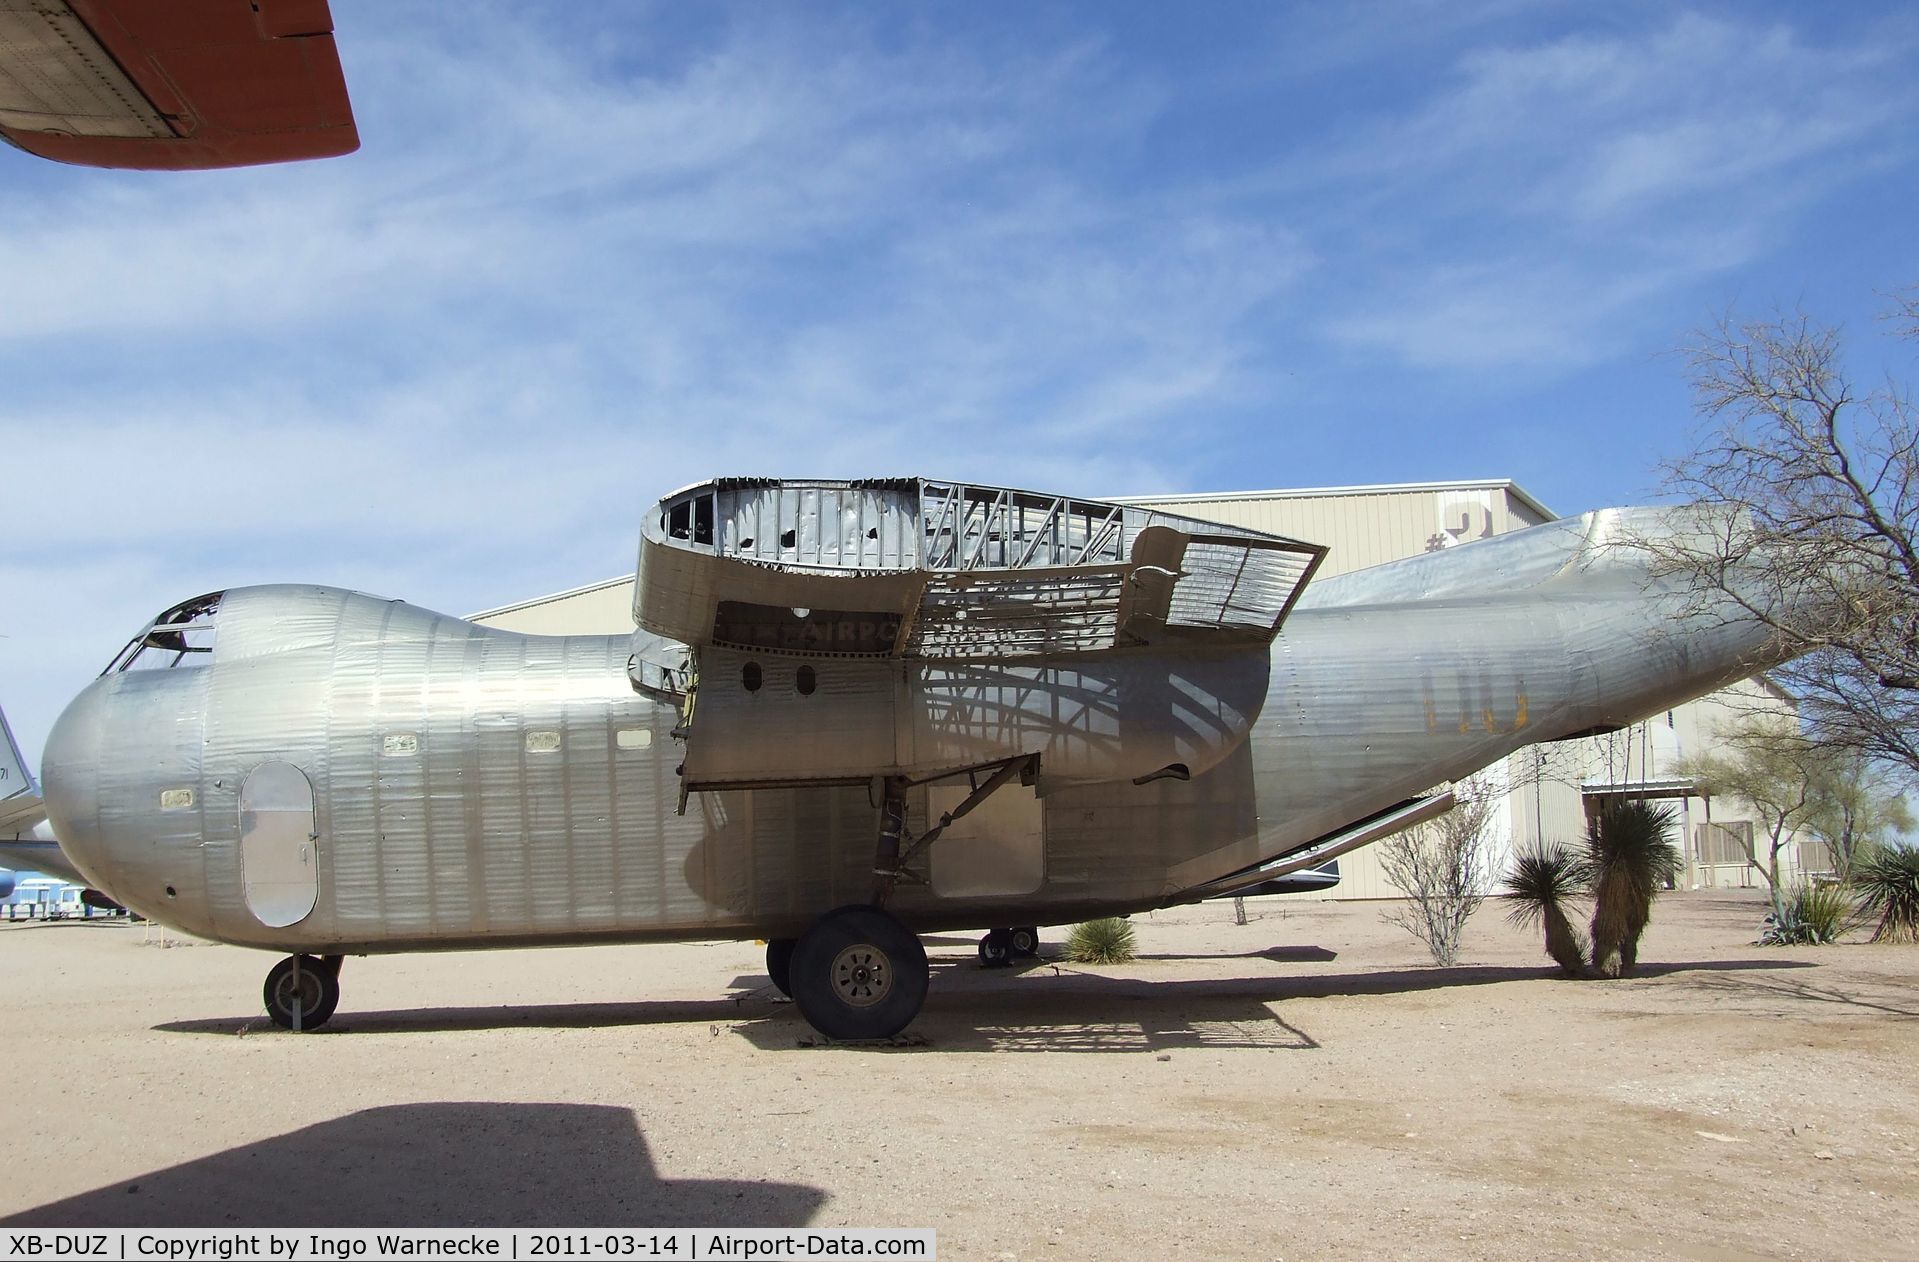 XB-DUZ, Budd RB-1 Conestoga C/N 016, Budd RB-1 Conestoga at the Pima Air & Space Museum, Tucson AZ